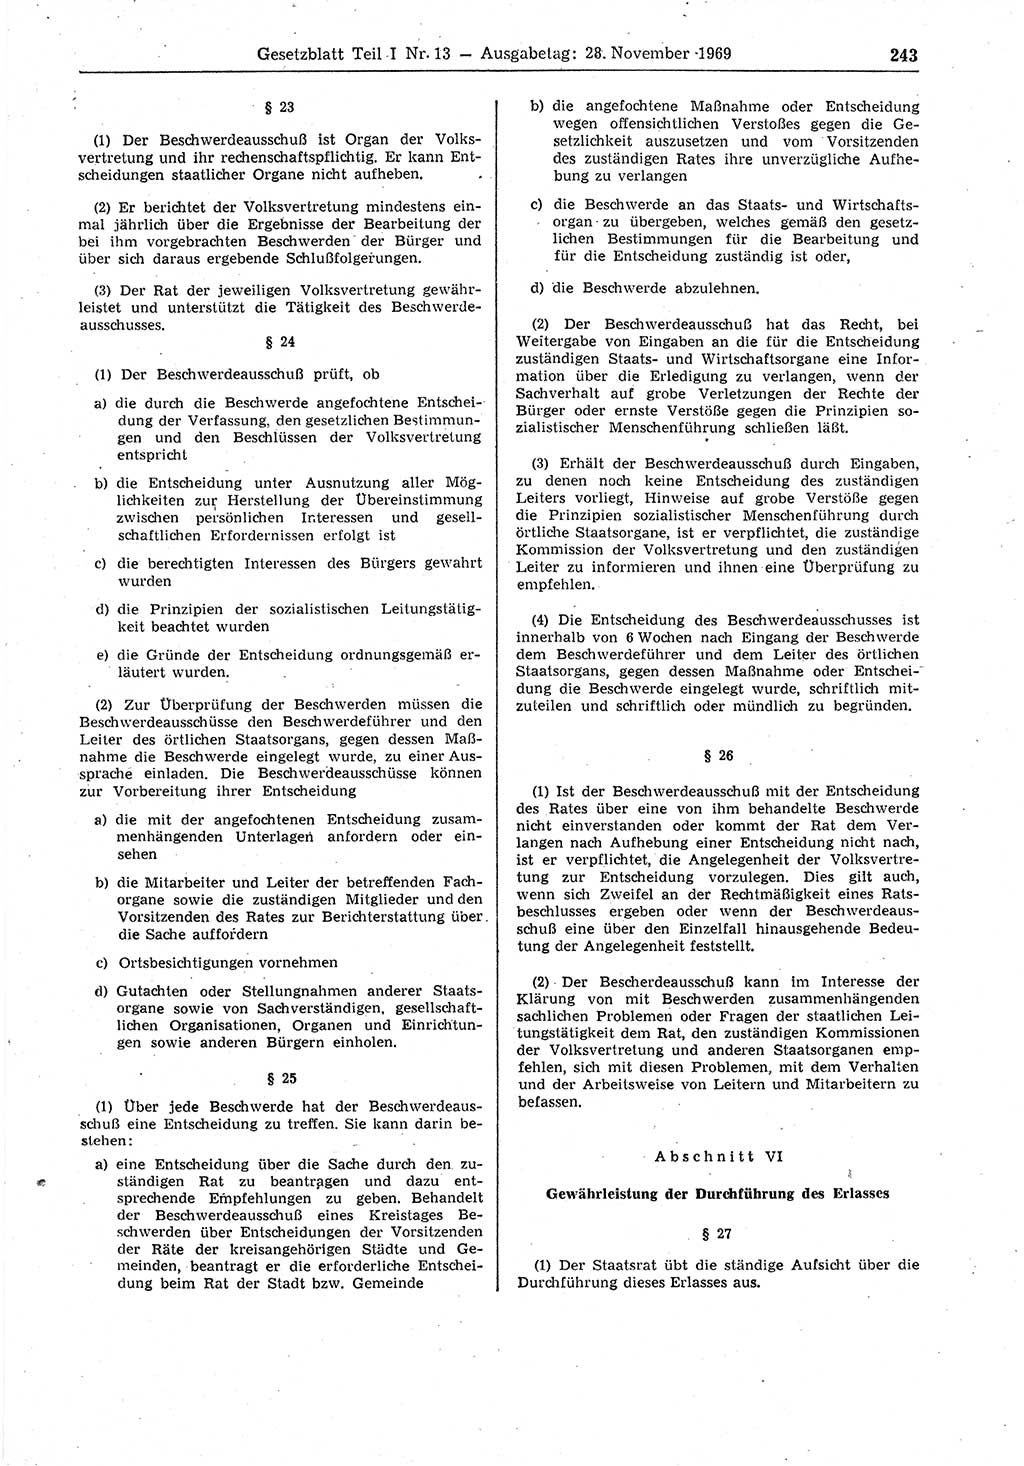 Gesetzblatt (GBl.) der Deutschen Demokratischen Republik (DDR) Teil Ⅰ 1969, Seite 243 (GBl. DDR Ⅰ 1969, S. 243)